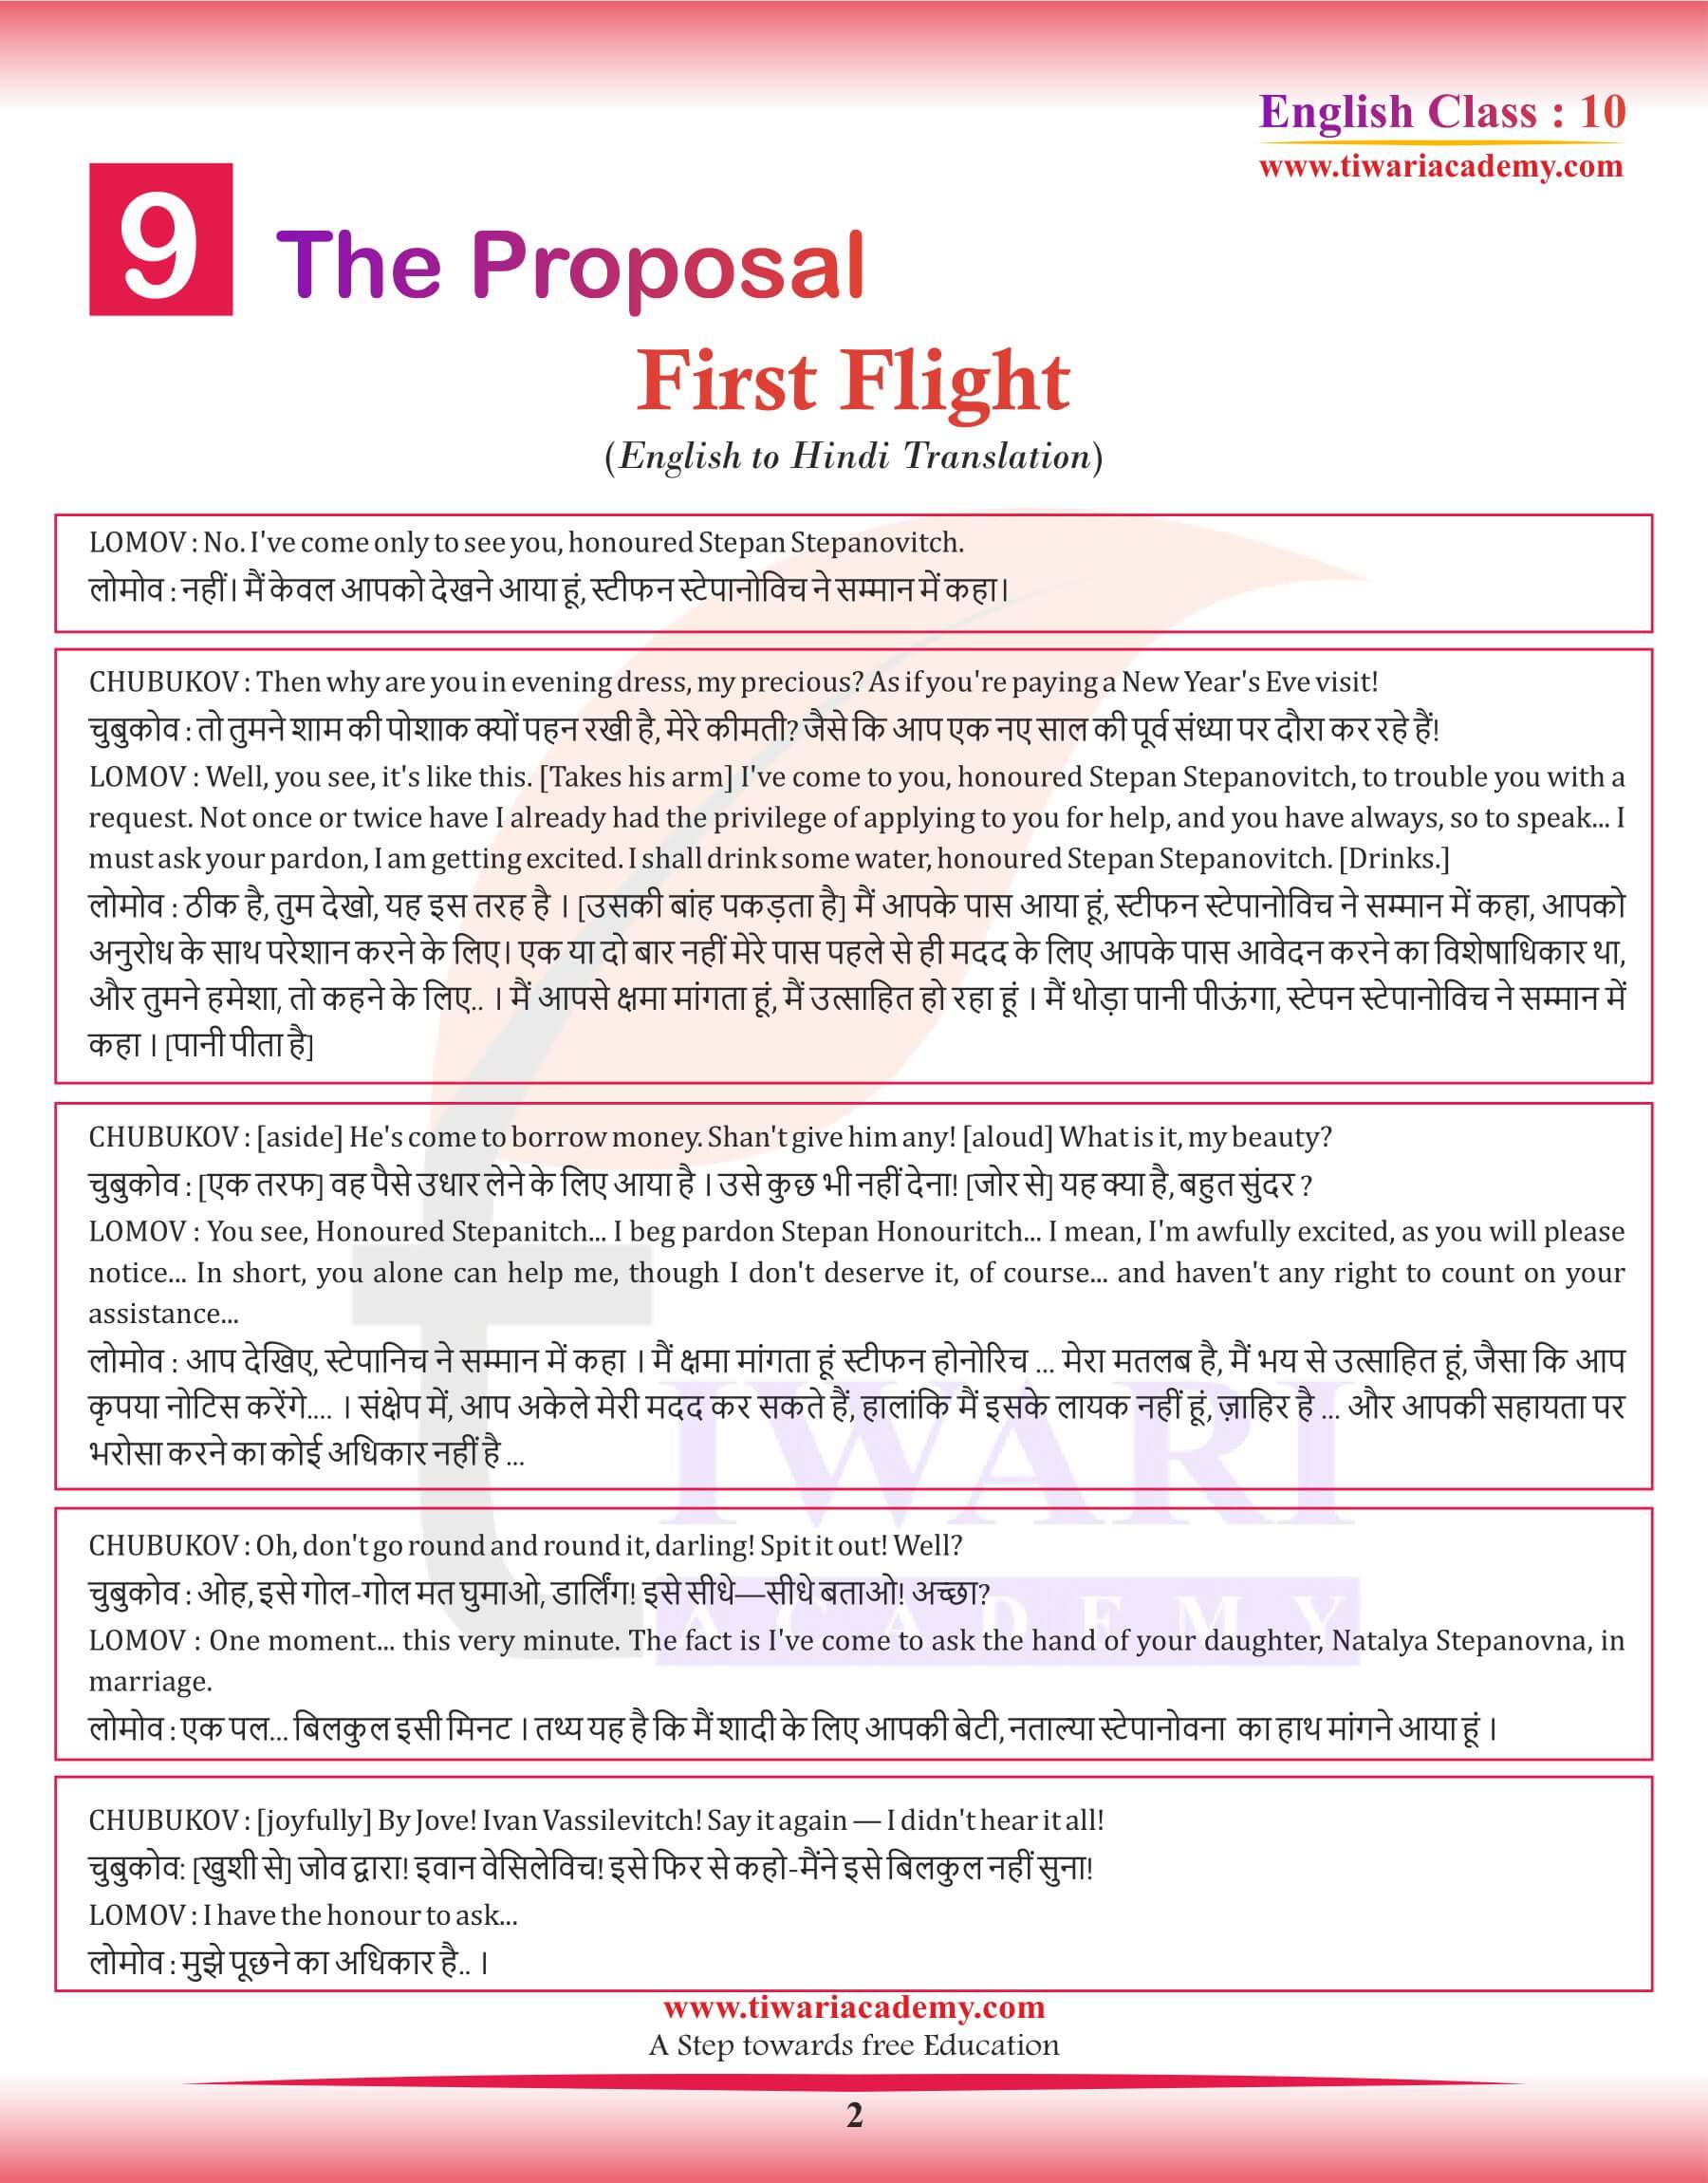 Class 10 English First Flight Chapter 9 English to Hindi Translation